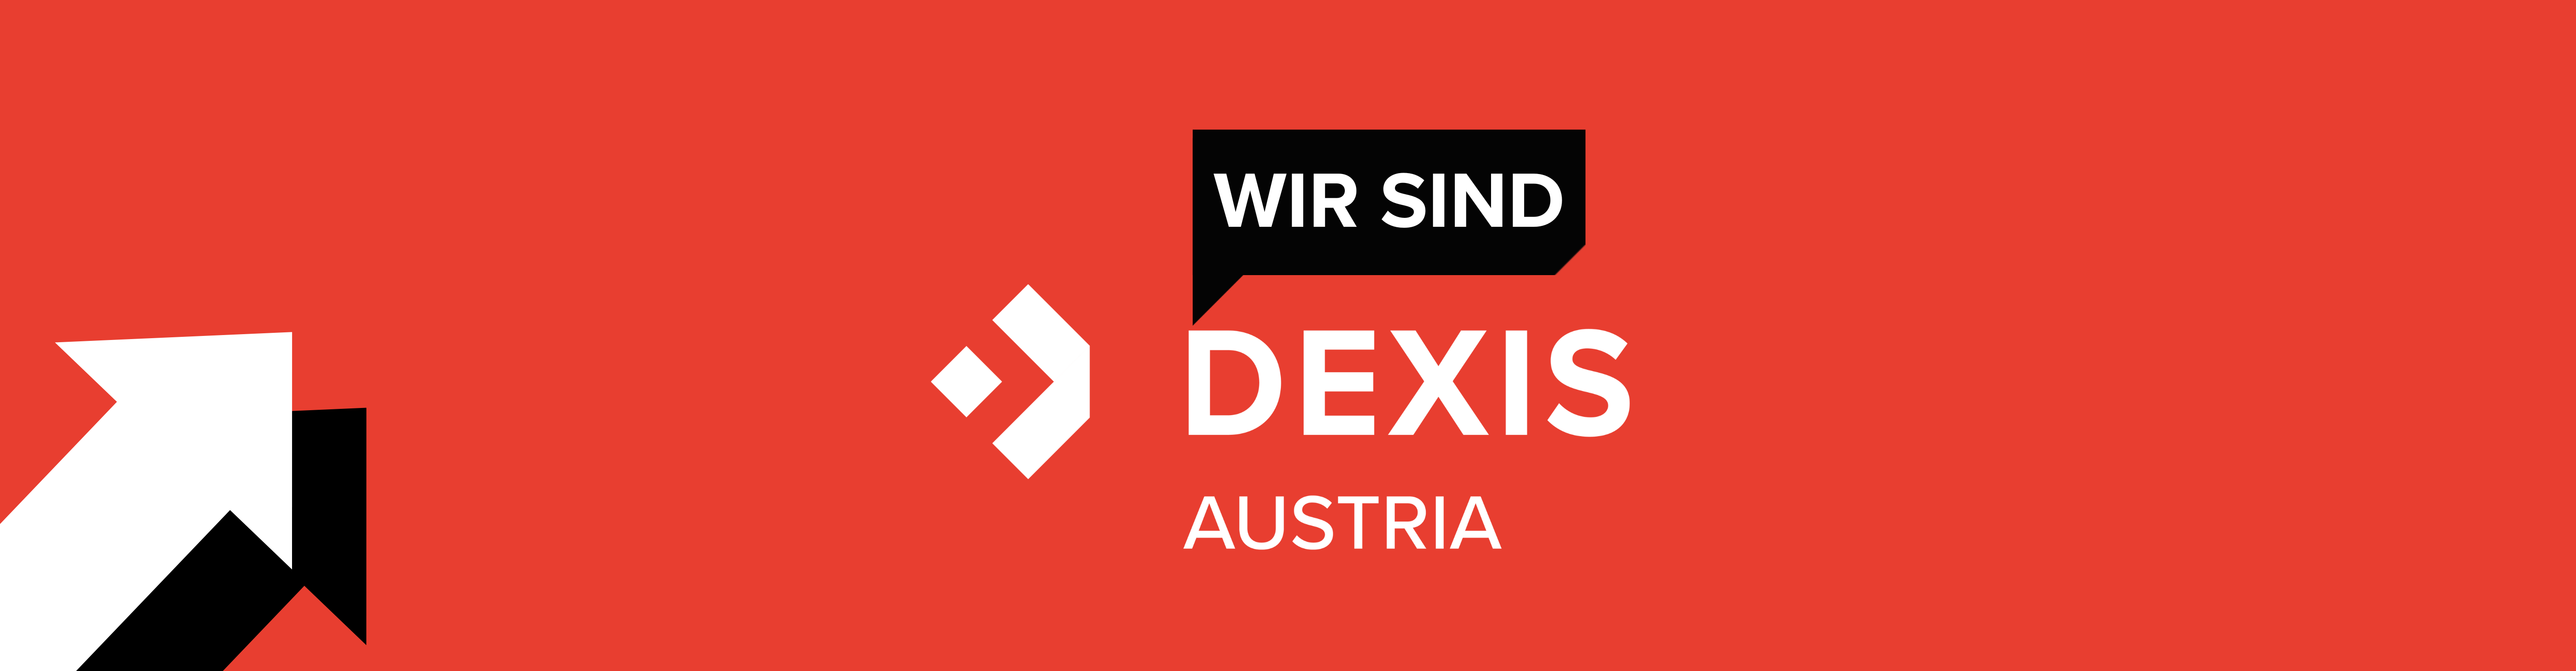 Steyr-Werner ist jetzt DEXIS Austria